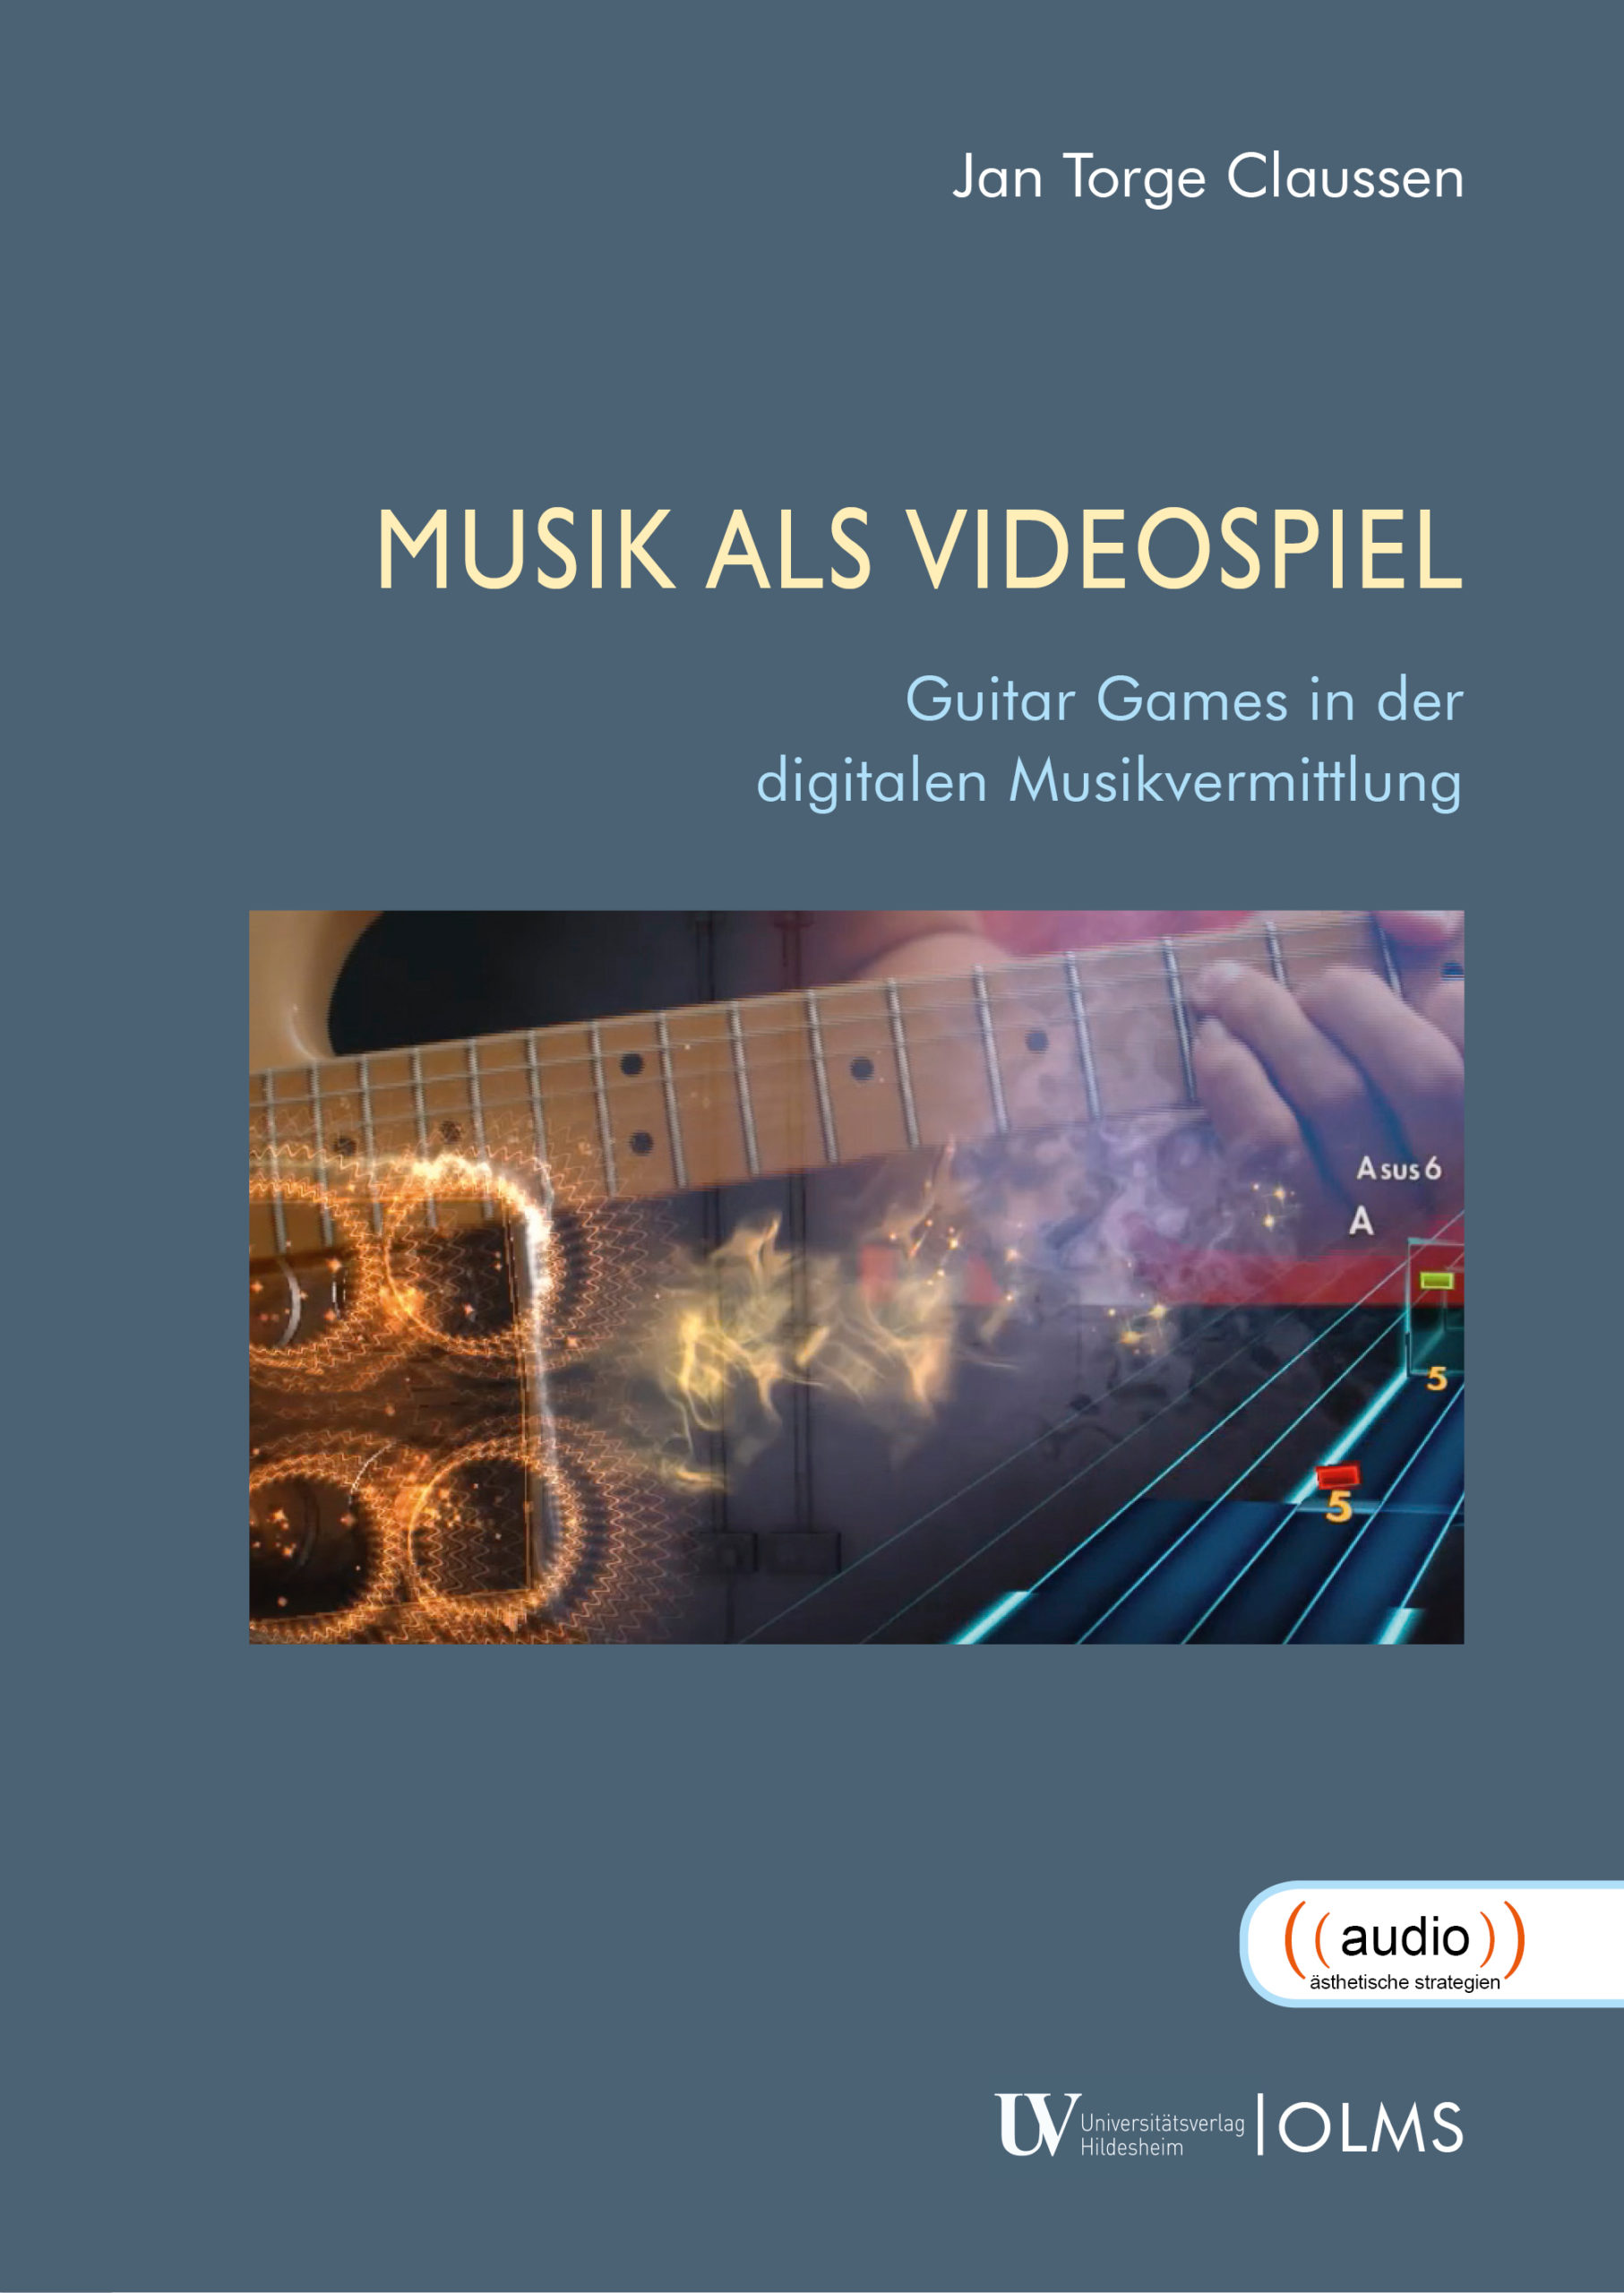 Neu | Jan Torge Claussen: Musik als Videospiel